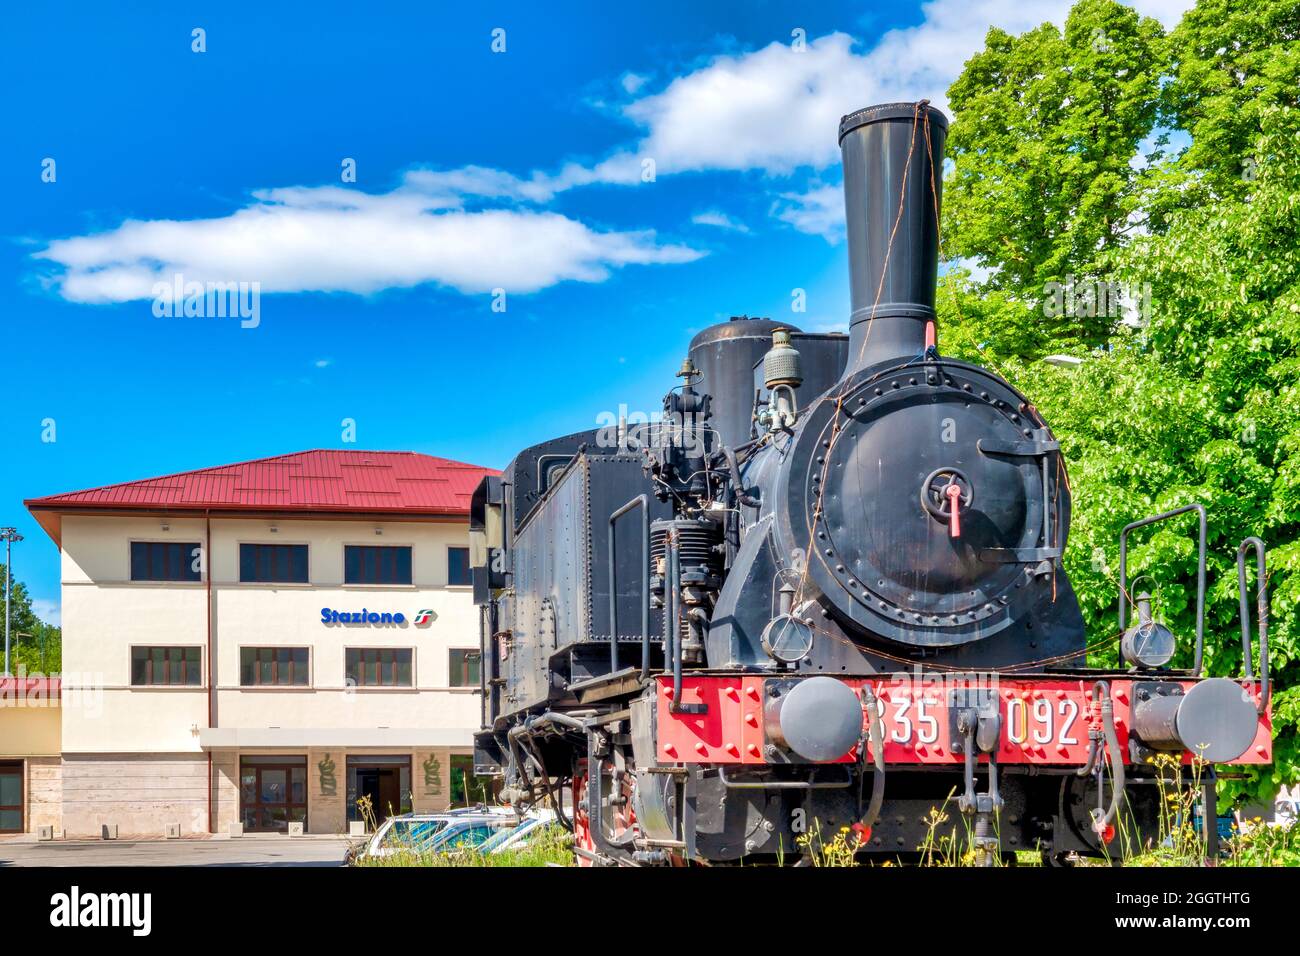 Locomotive à vapeur 835.092 du 'Ferrovie dello Stato' conservée comme monument à la gare de Sulmona, Italie Banque D'Images